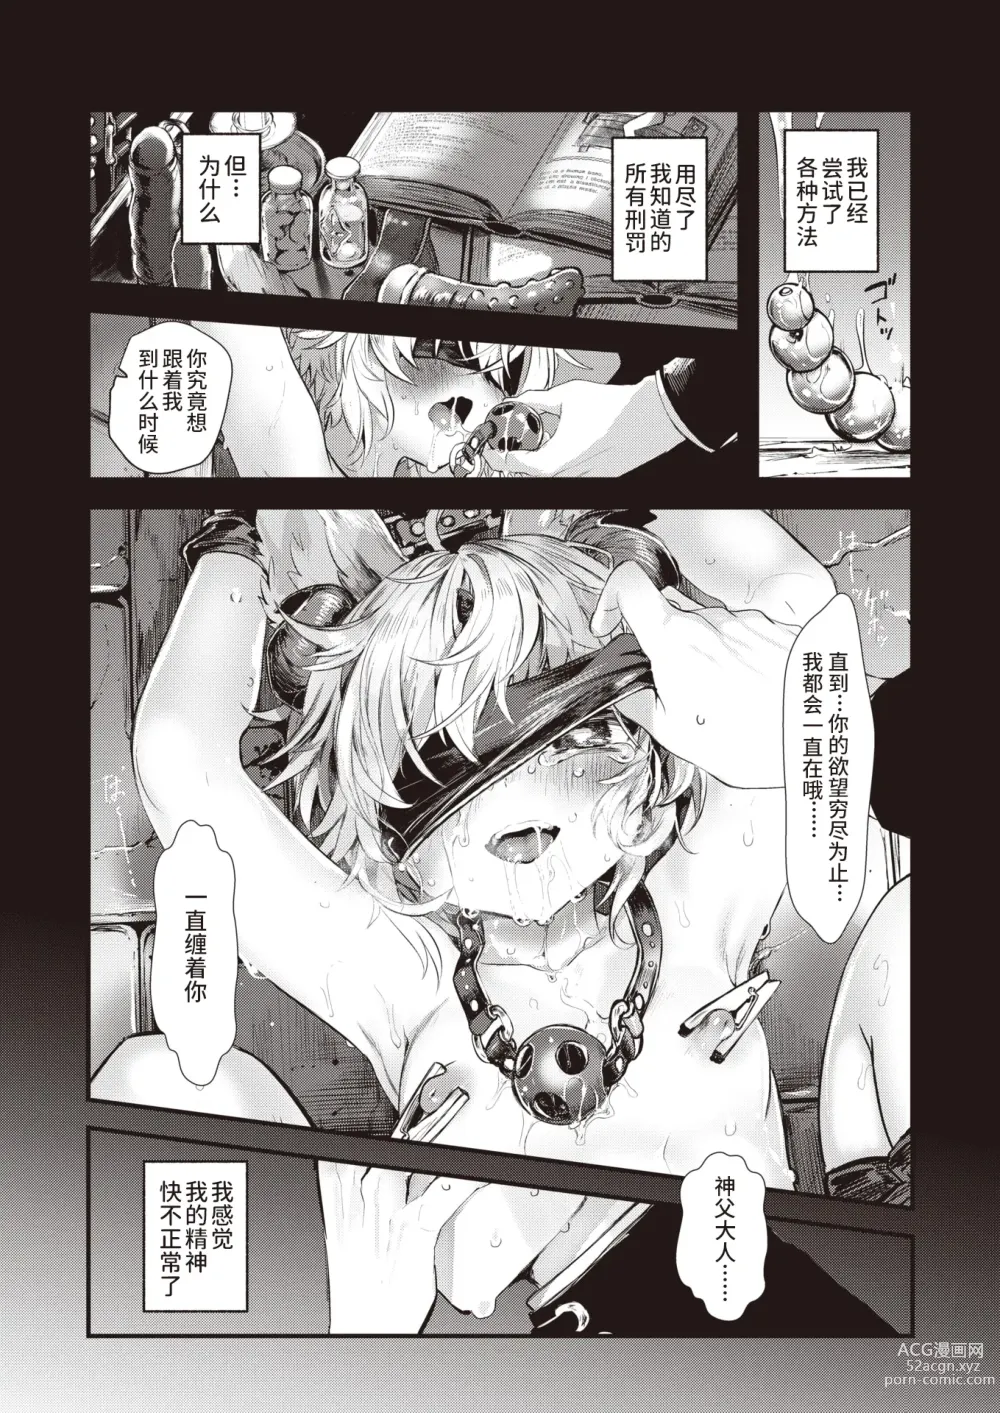 Page 2 of manga 侵入梦境的淫欲 后篇